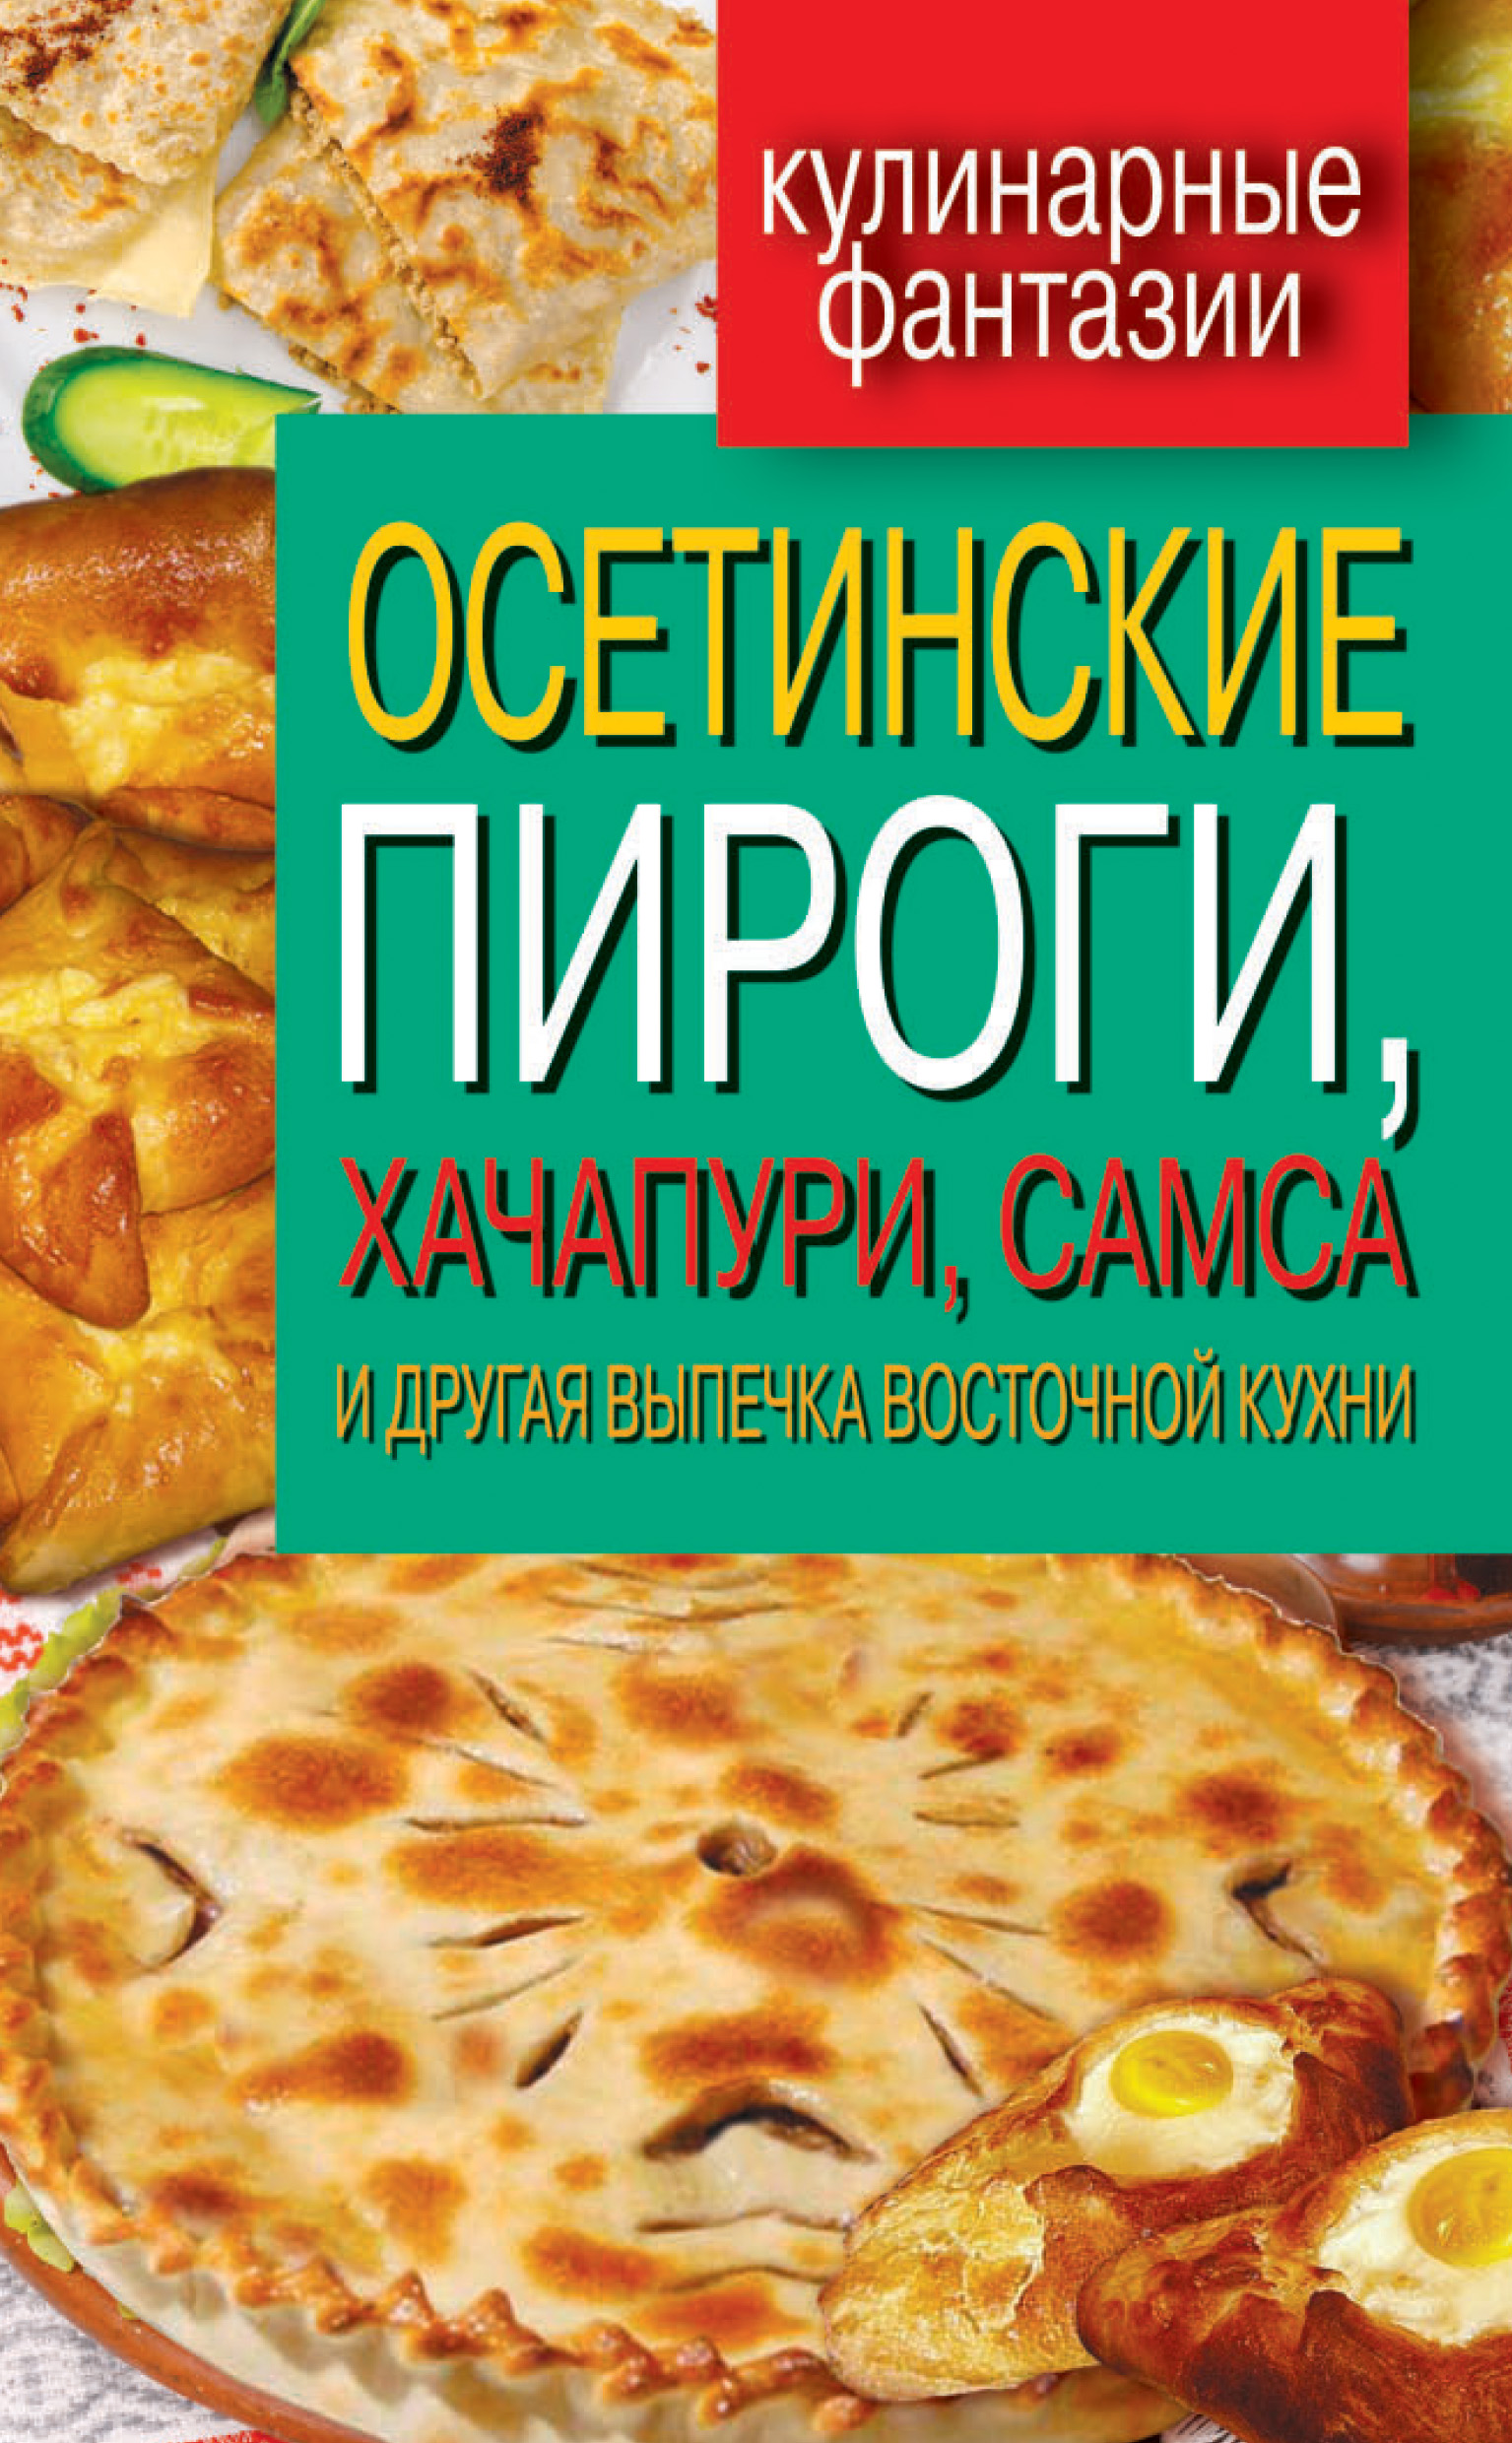 Осетинские пироги, хачапури, самса и другая выпечка восточной кухни –  скачать книгу fb2, epub, pdf на ЛитРес